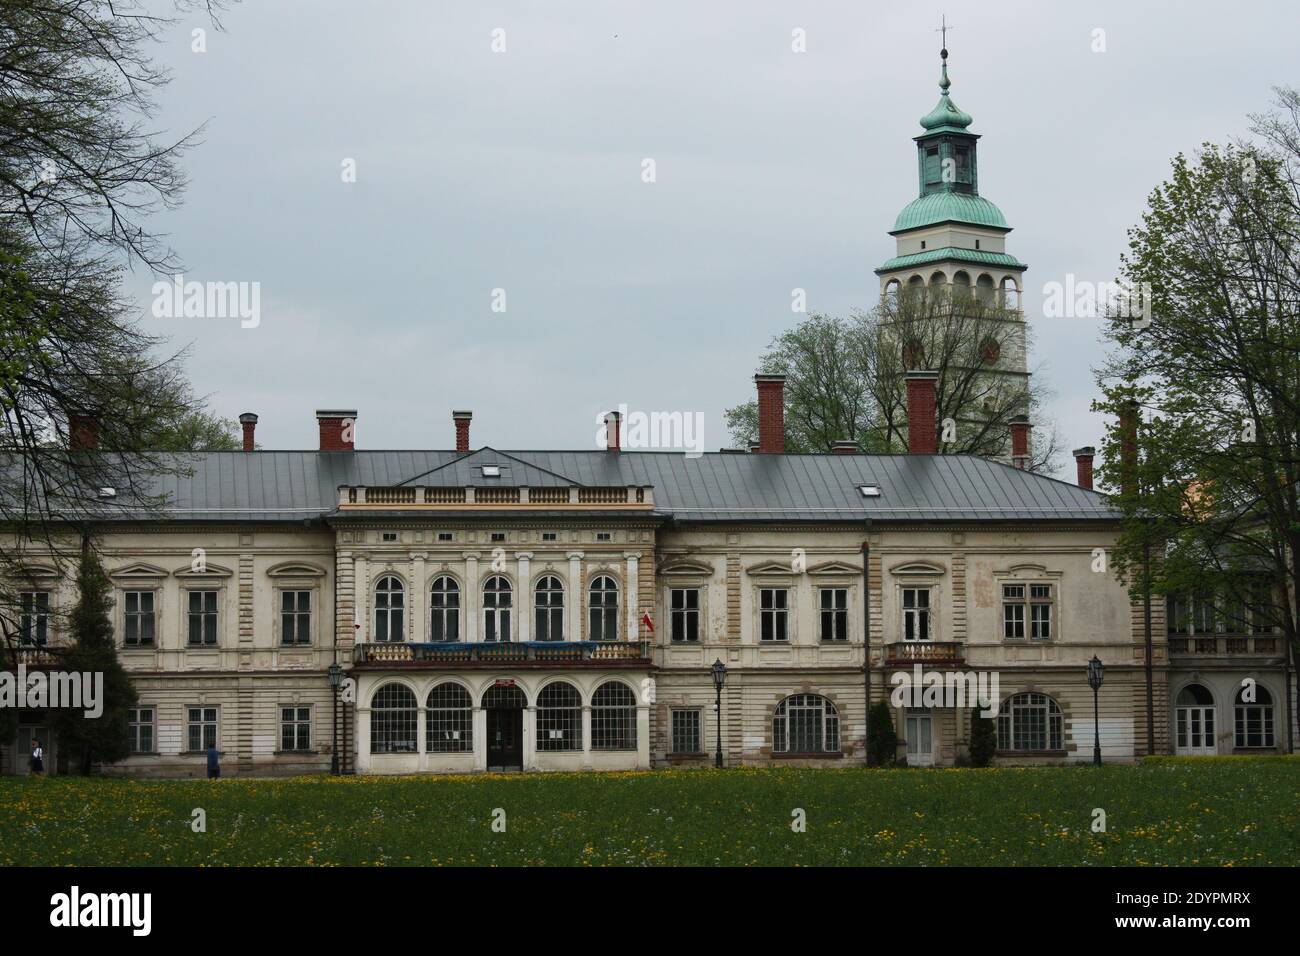 Schloss Habsburg in Zywiec, Residenz der kaiserlichen Familie Habsburger, derzeit öffentliches Eigentum, Polen Stockfoto